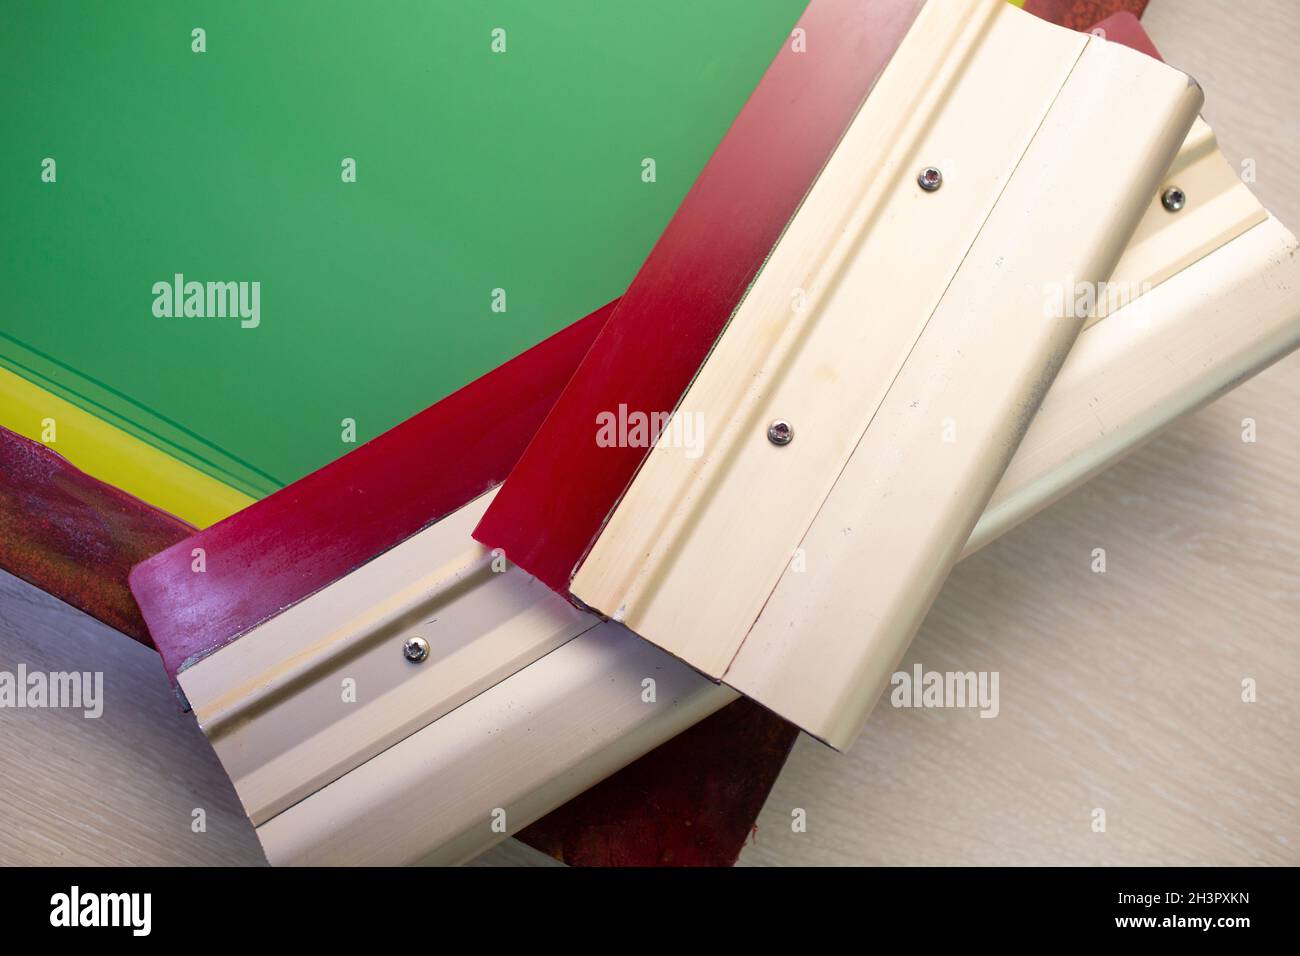 Siebdruck-Verfahren für Siebdruck in der Bekleidungsfabrik. Rahmenschablone und Rakel Stockfoto